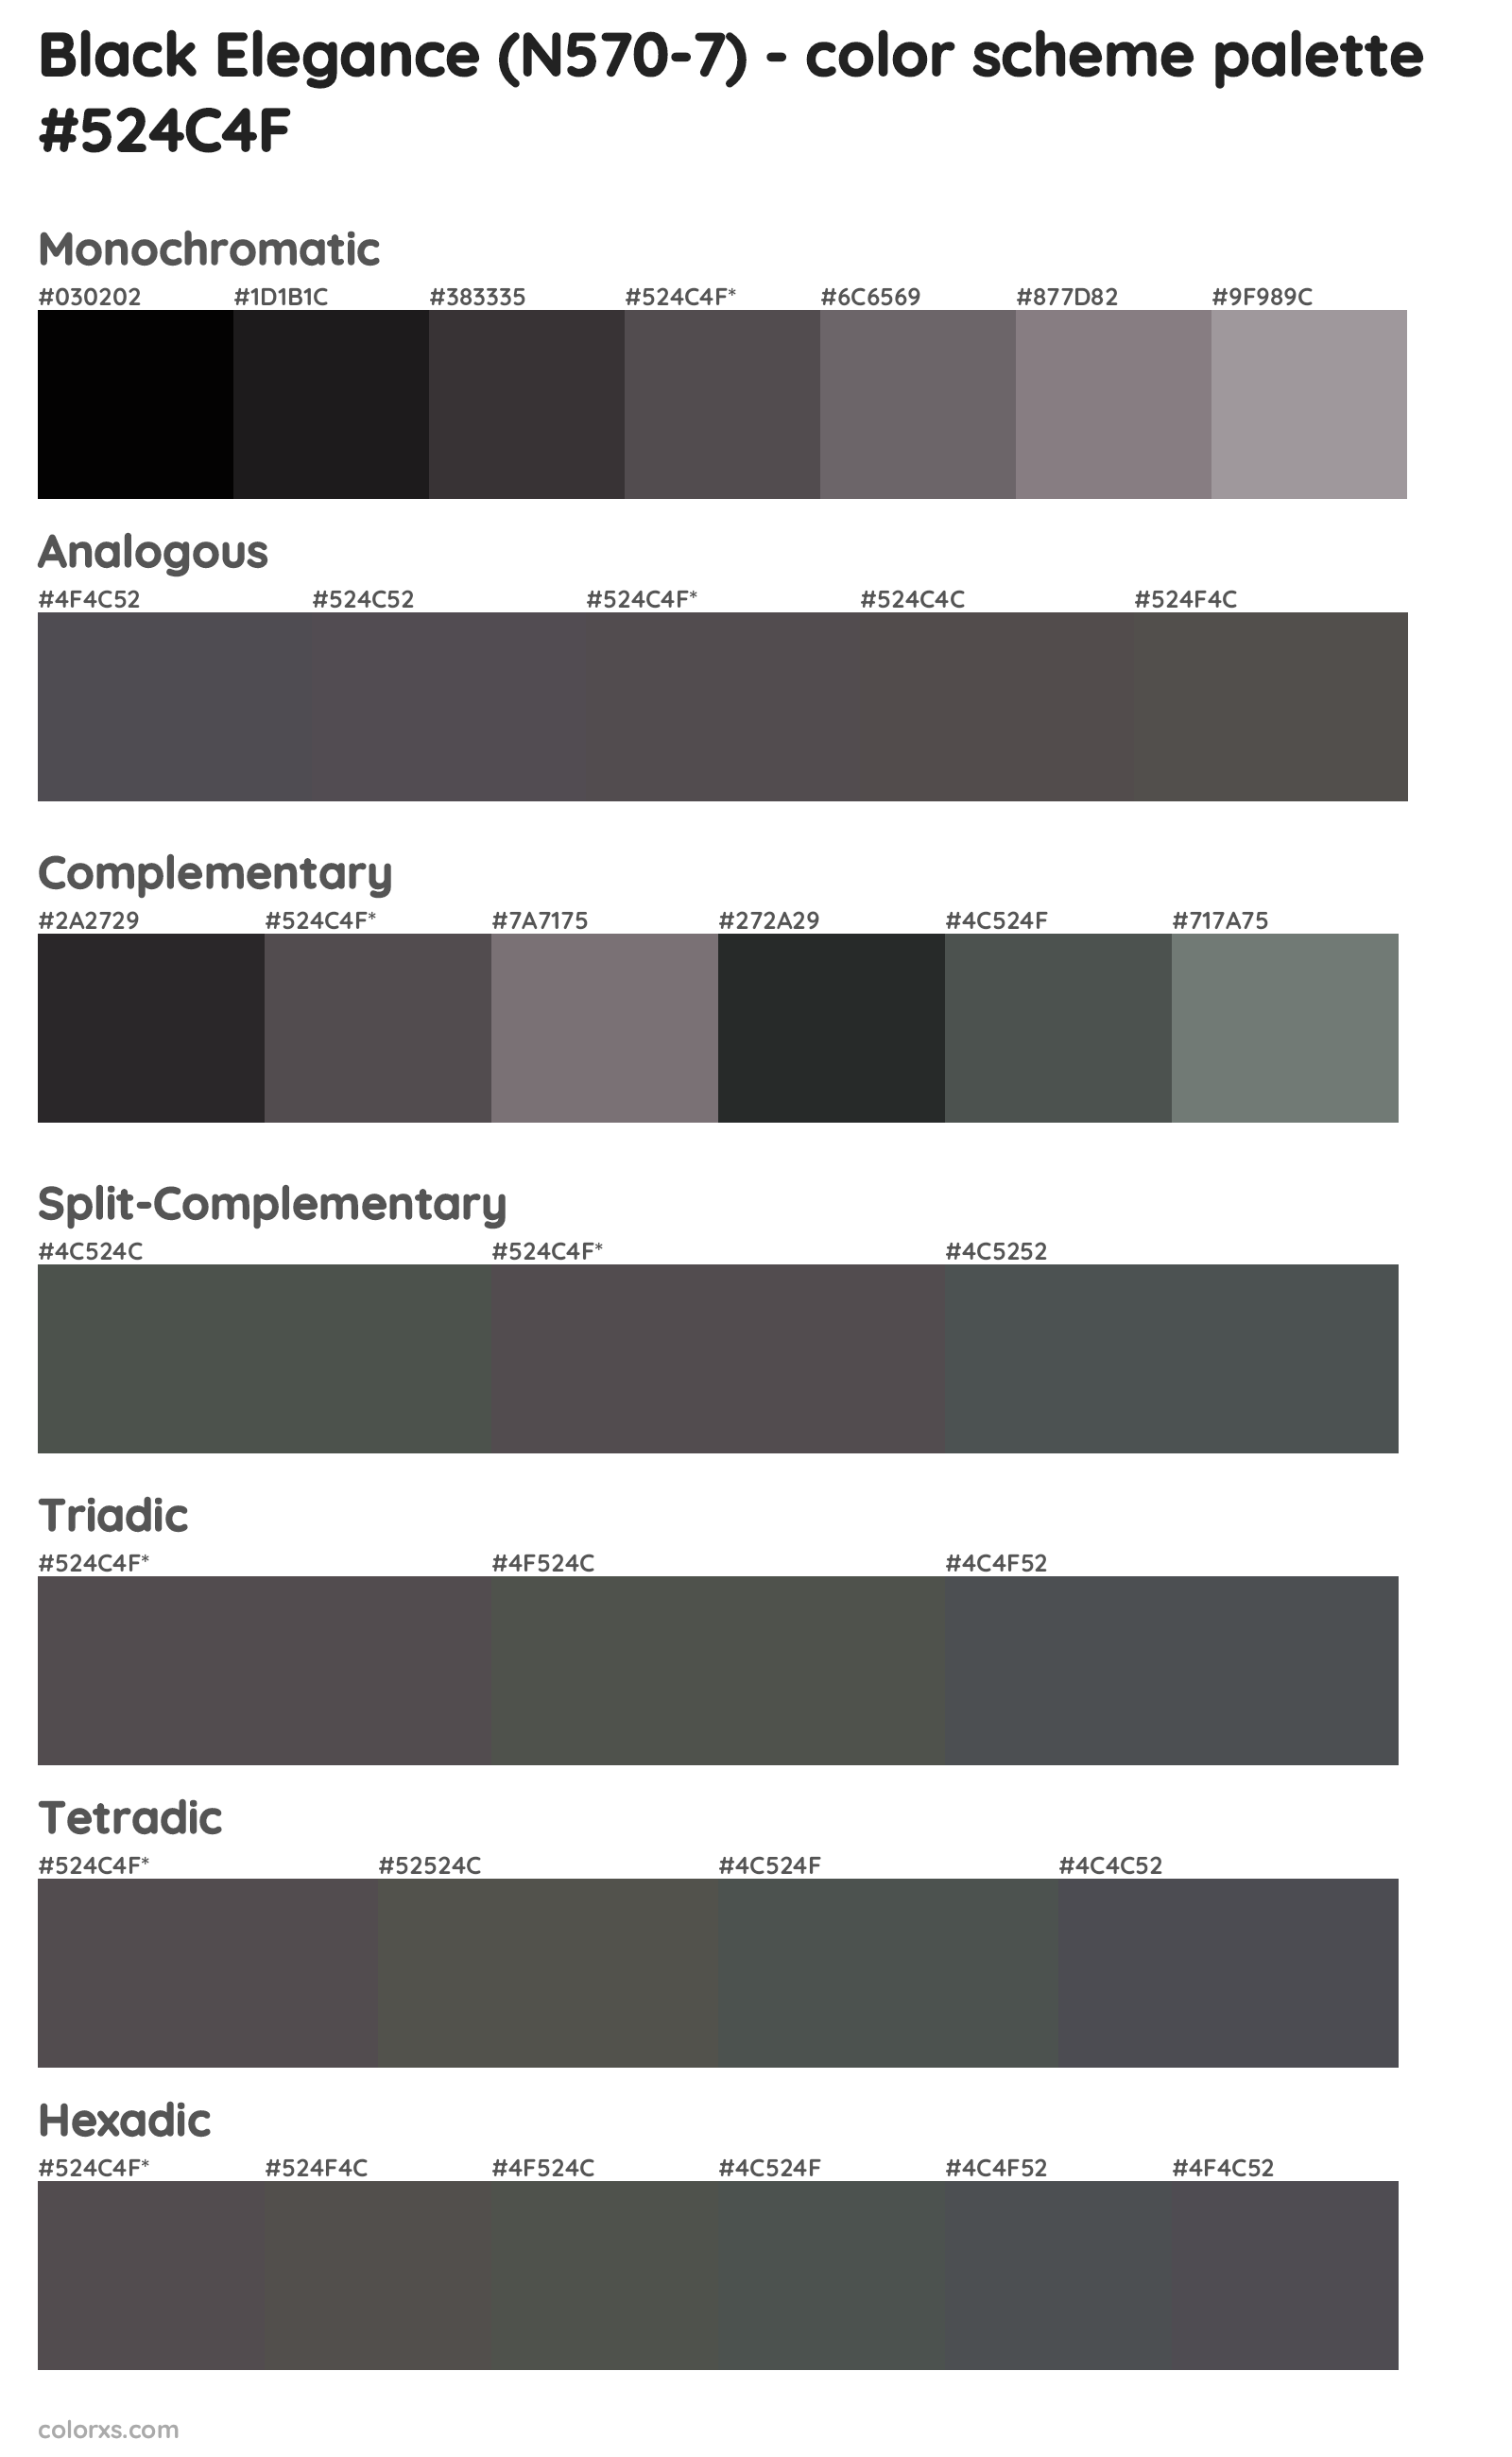 Black Elegance (N570-7) Color Scheme Palettes